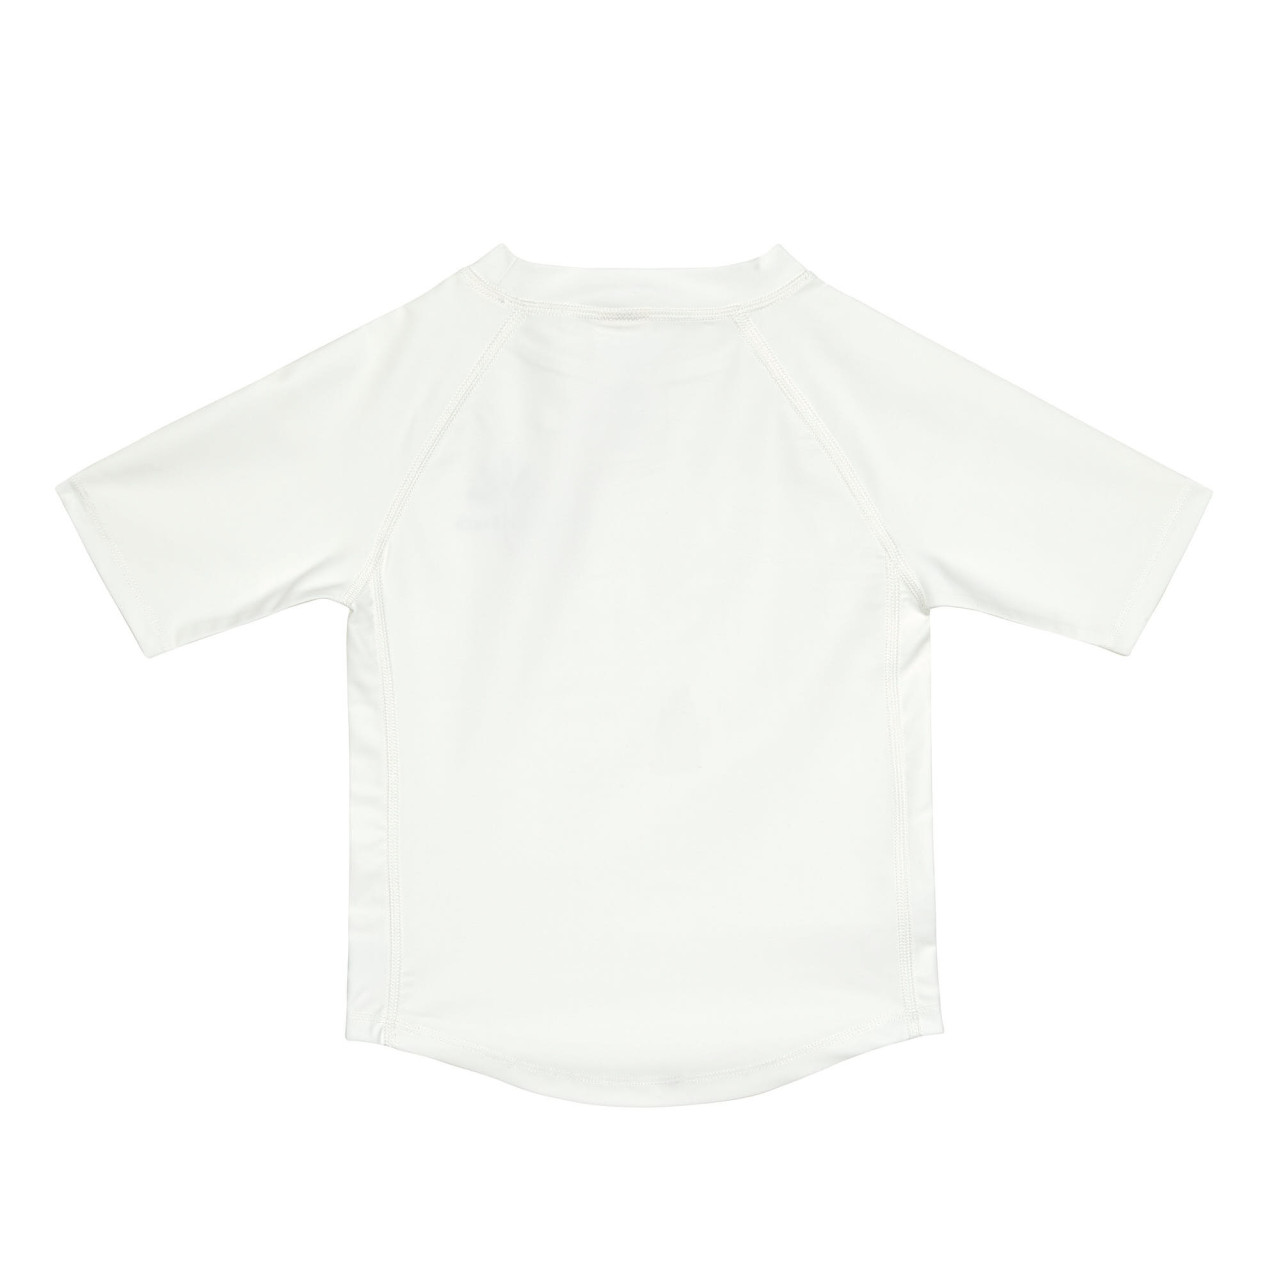 Badekleidung T-Shirt weiß 74/80 Lässig Palmen